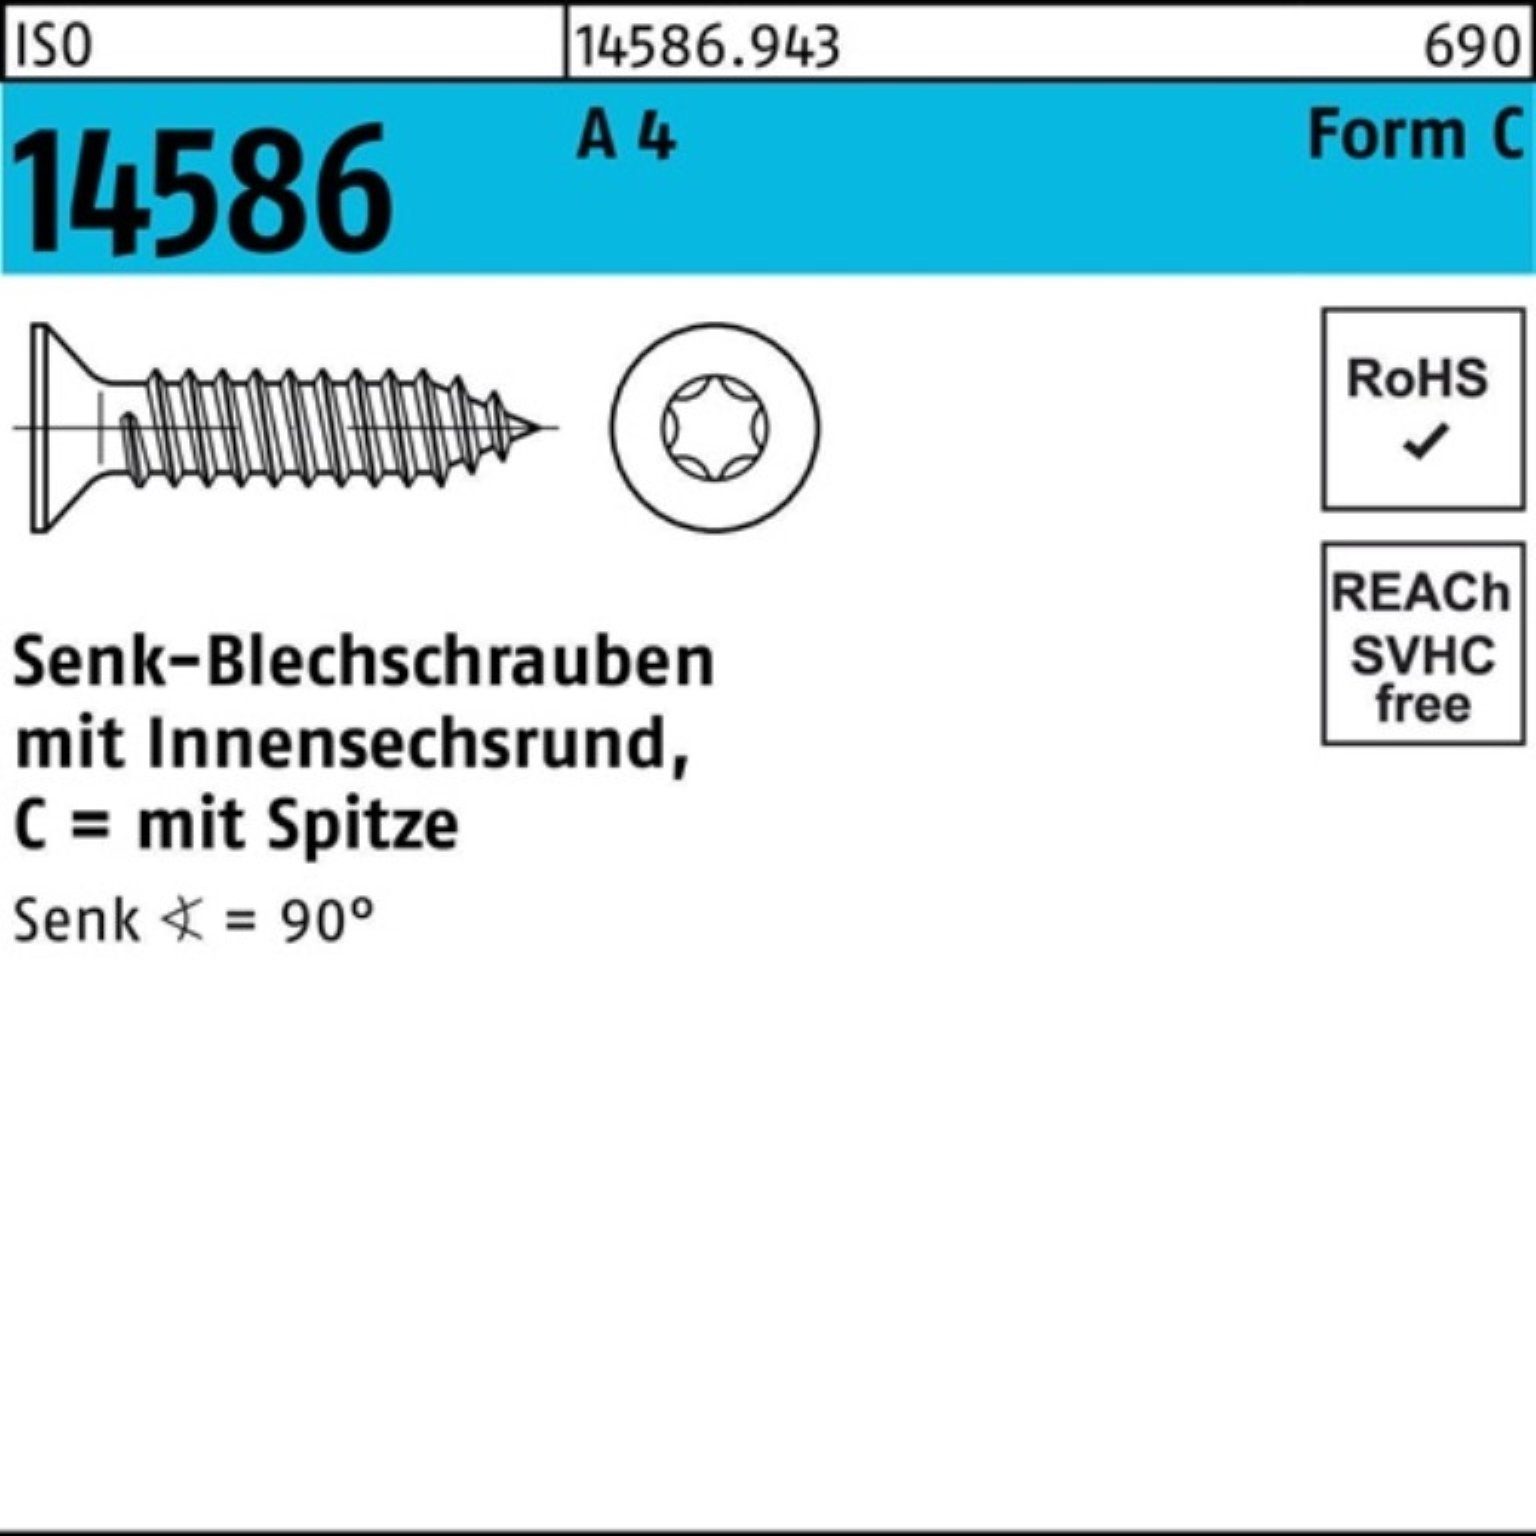 Reyher Schraube 250er Pack Senkblechschraube ISO 14586 ISR/Spitze 5,5x 50-T25 A 4 250